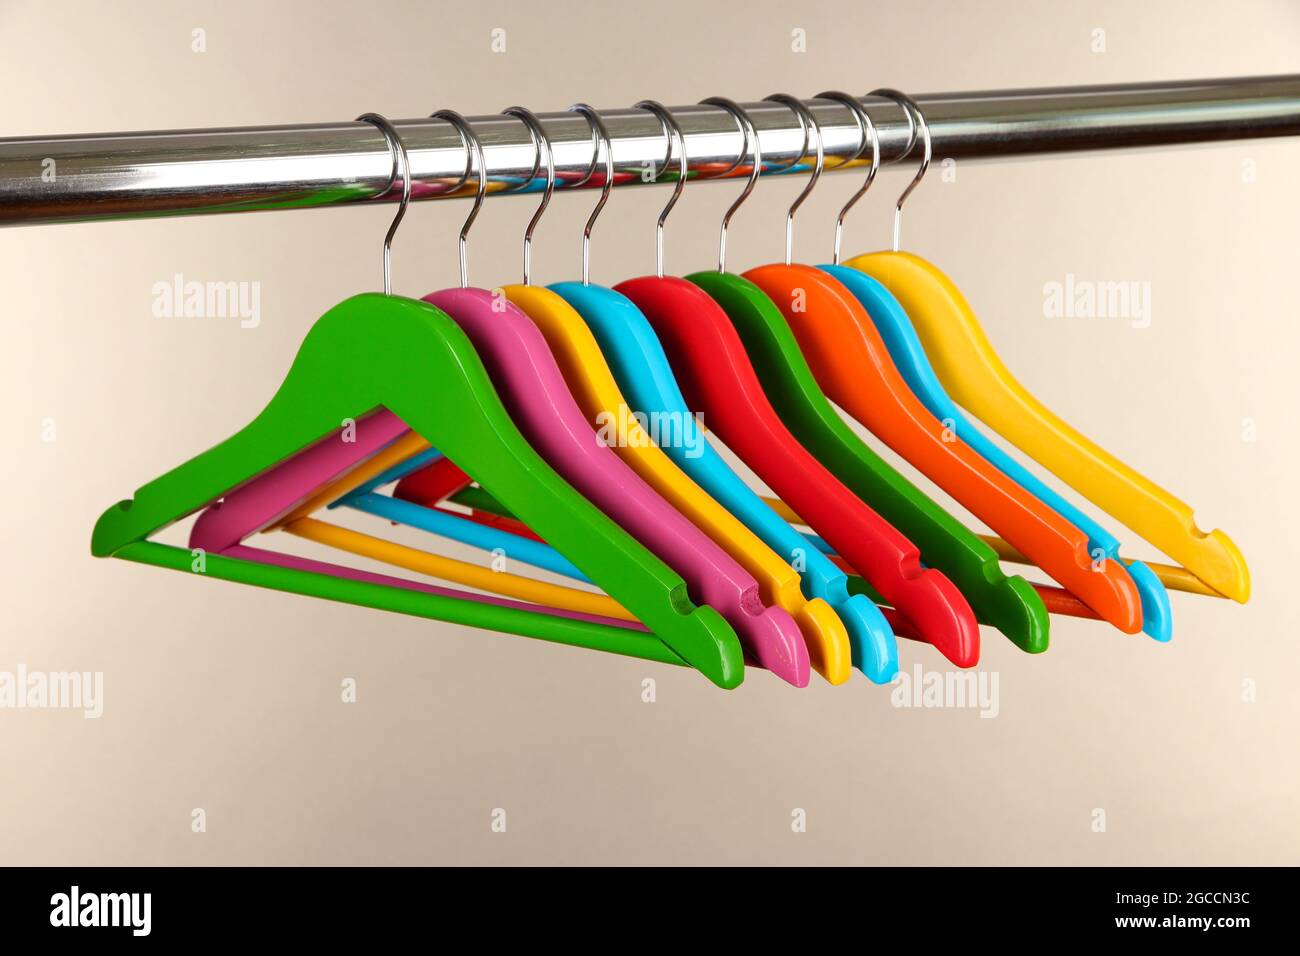 Bunte Kleiderbügel auf grauem Hintergrund Stockfotografie - Alamy